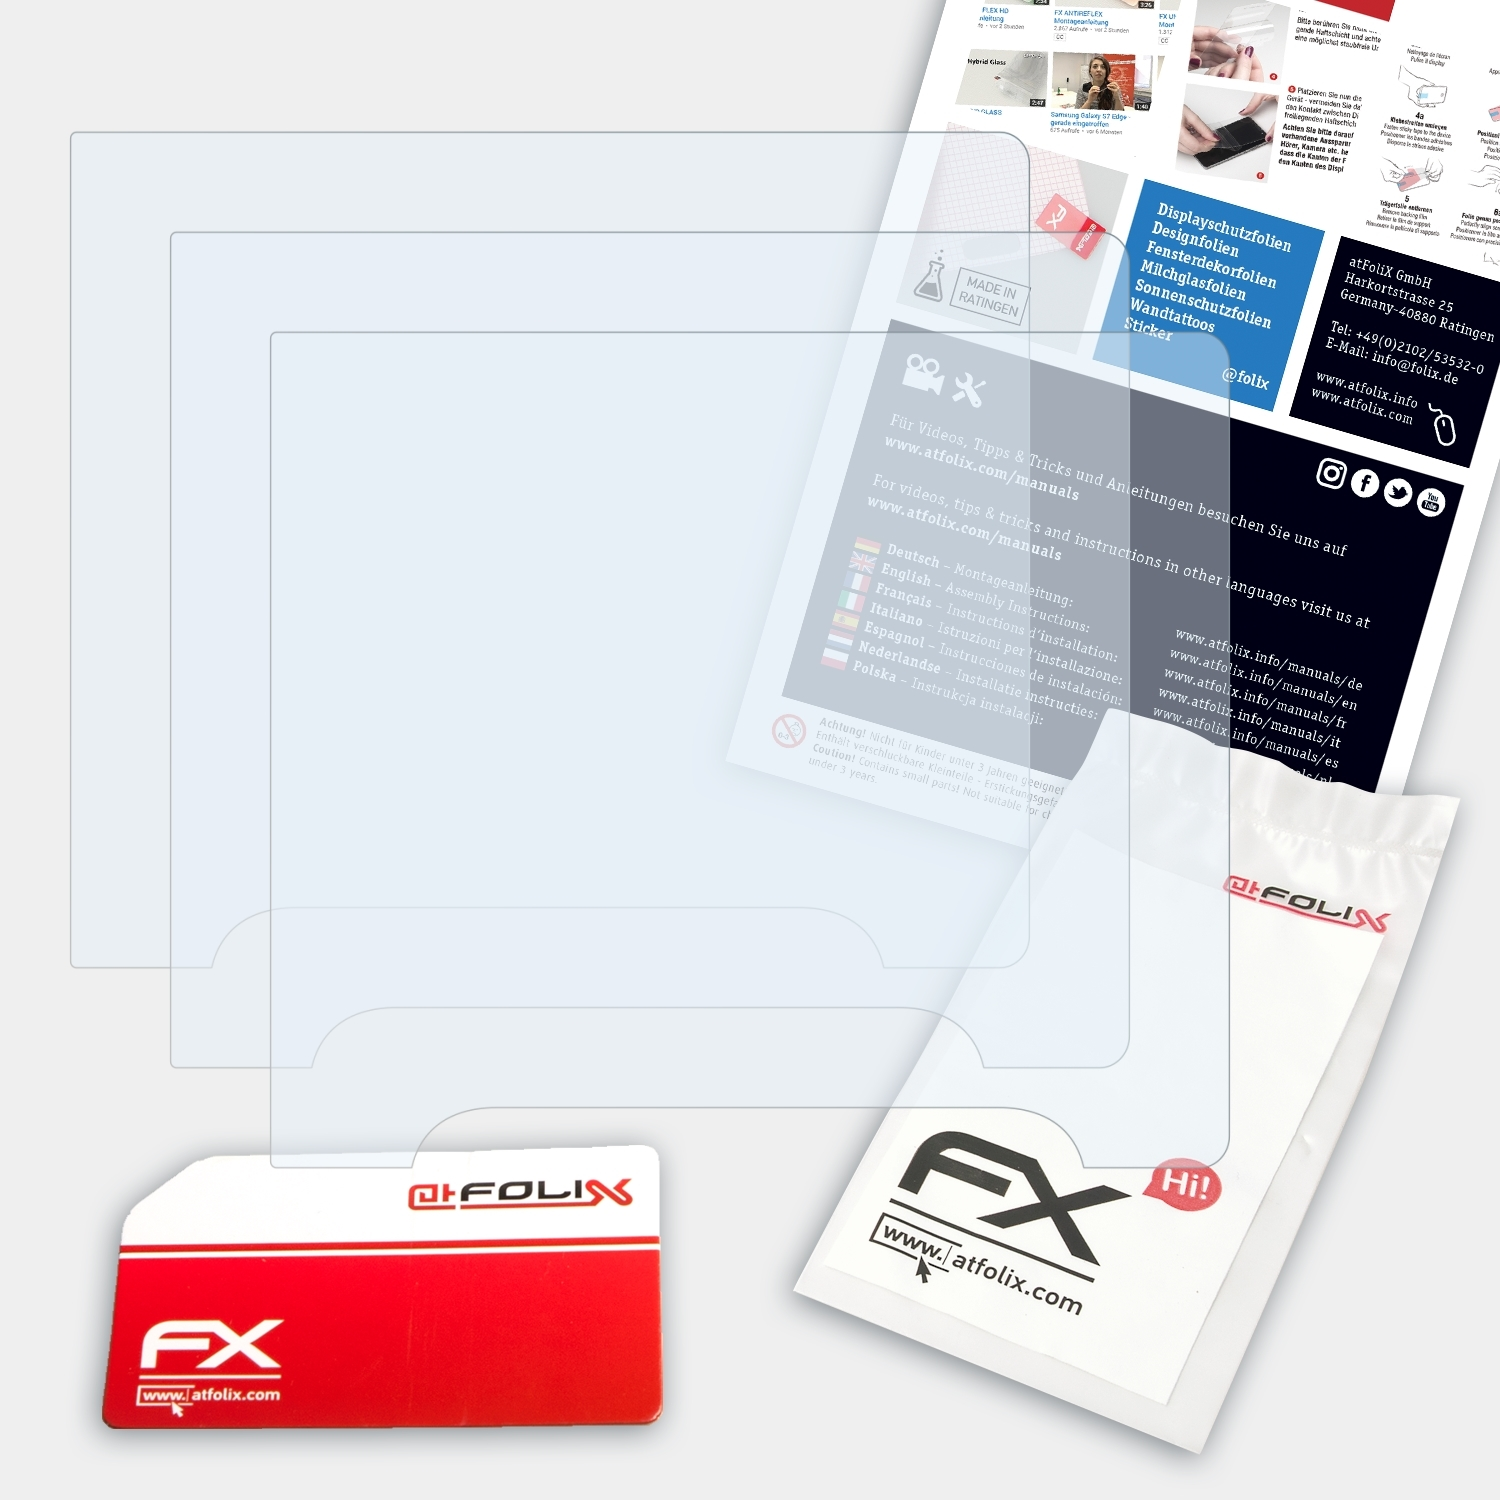 3x ATFOLIX Hasselblad FX-Clear Displayschutz(für X1D)